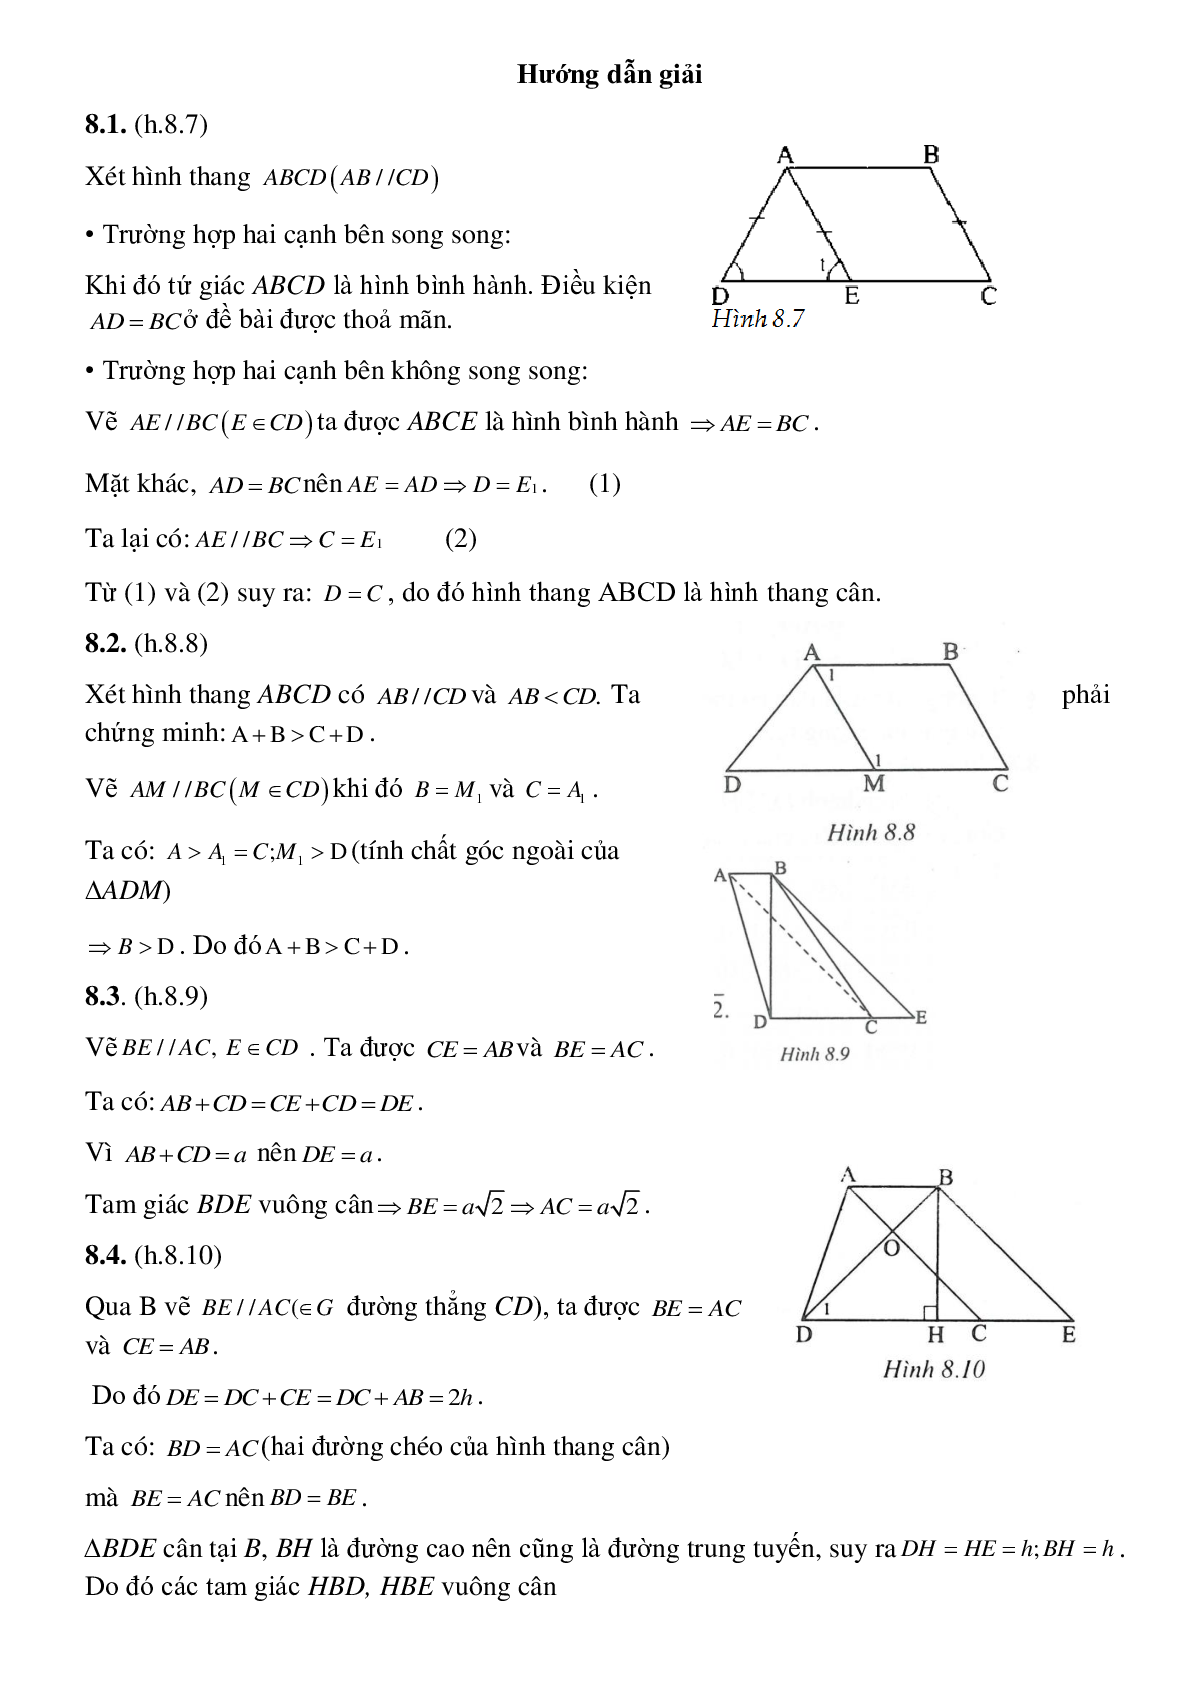 Hình phụ để giải toán trong chương tứ giác (trang 6)